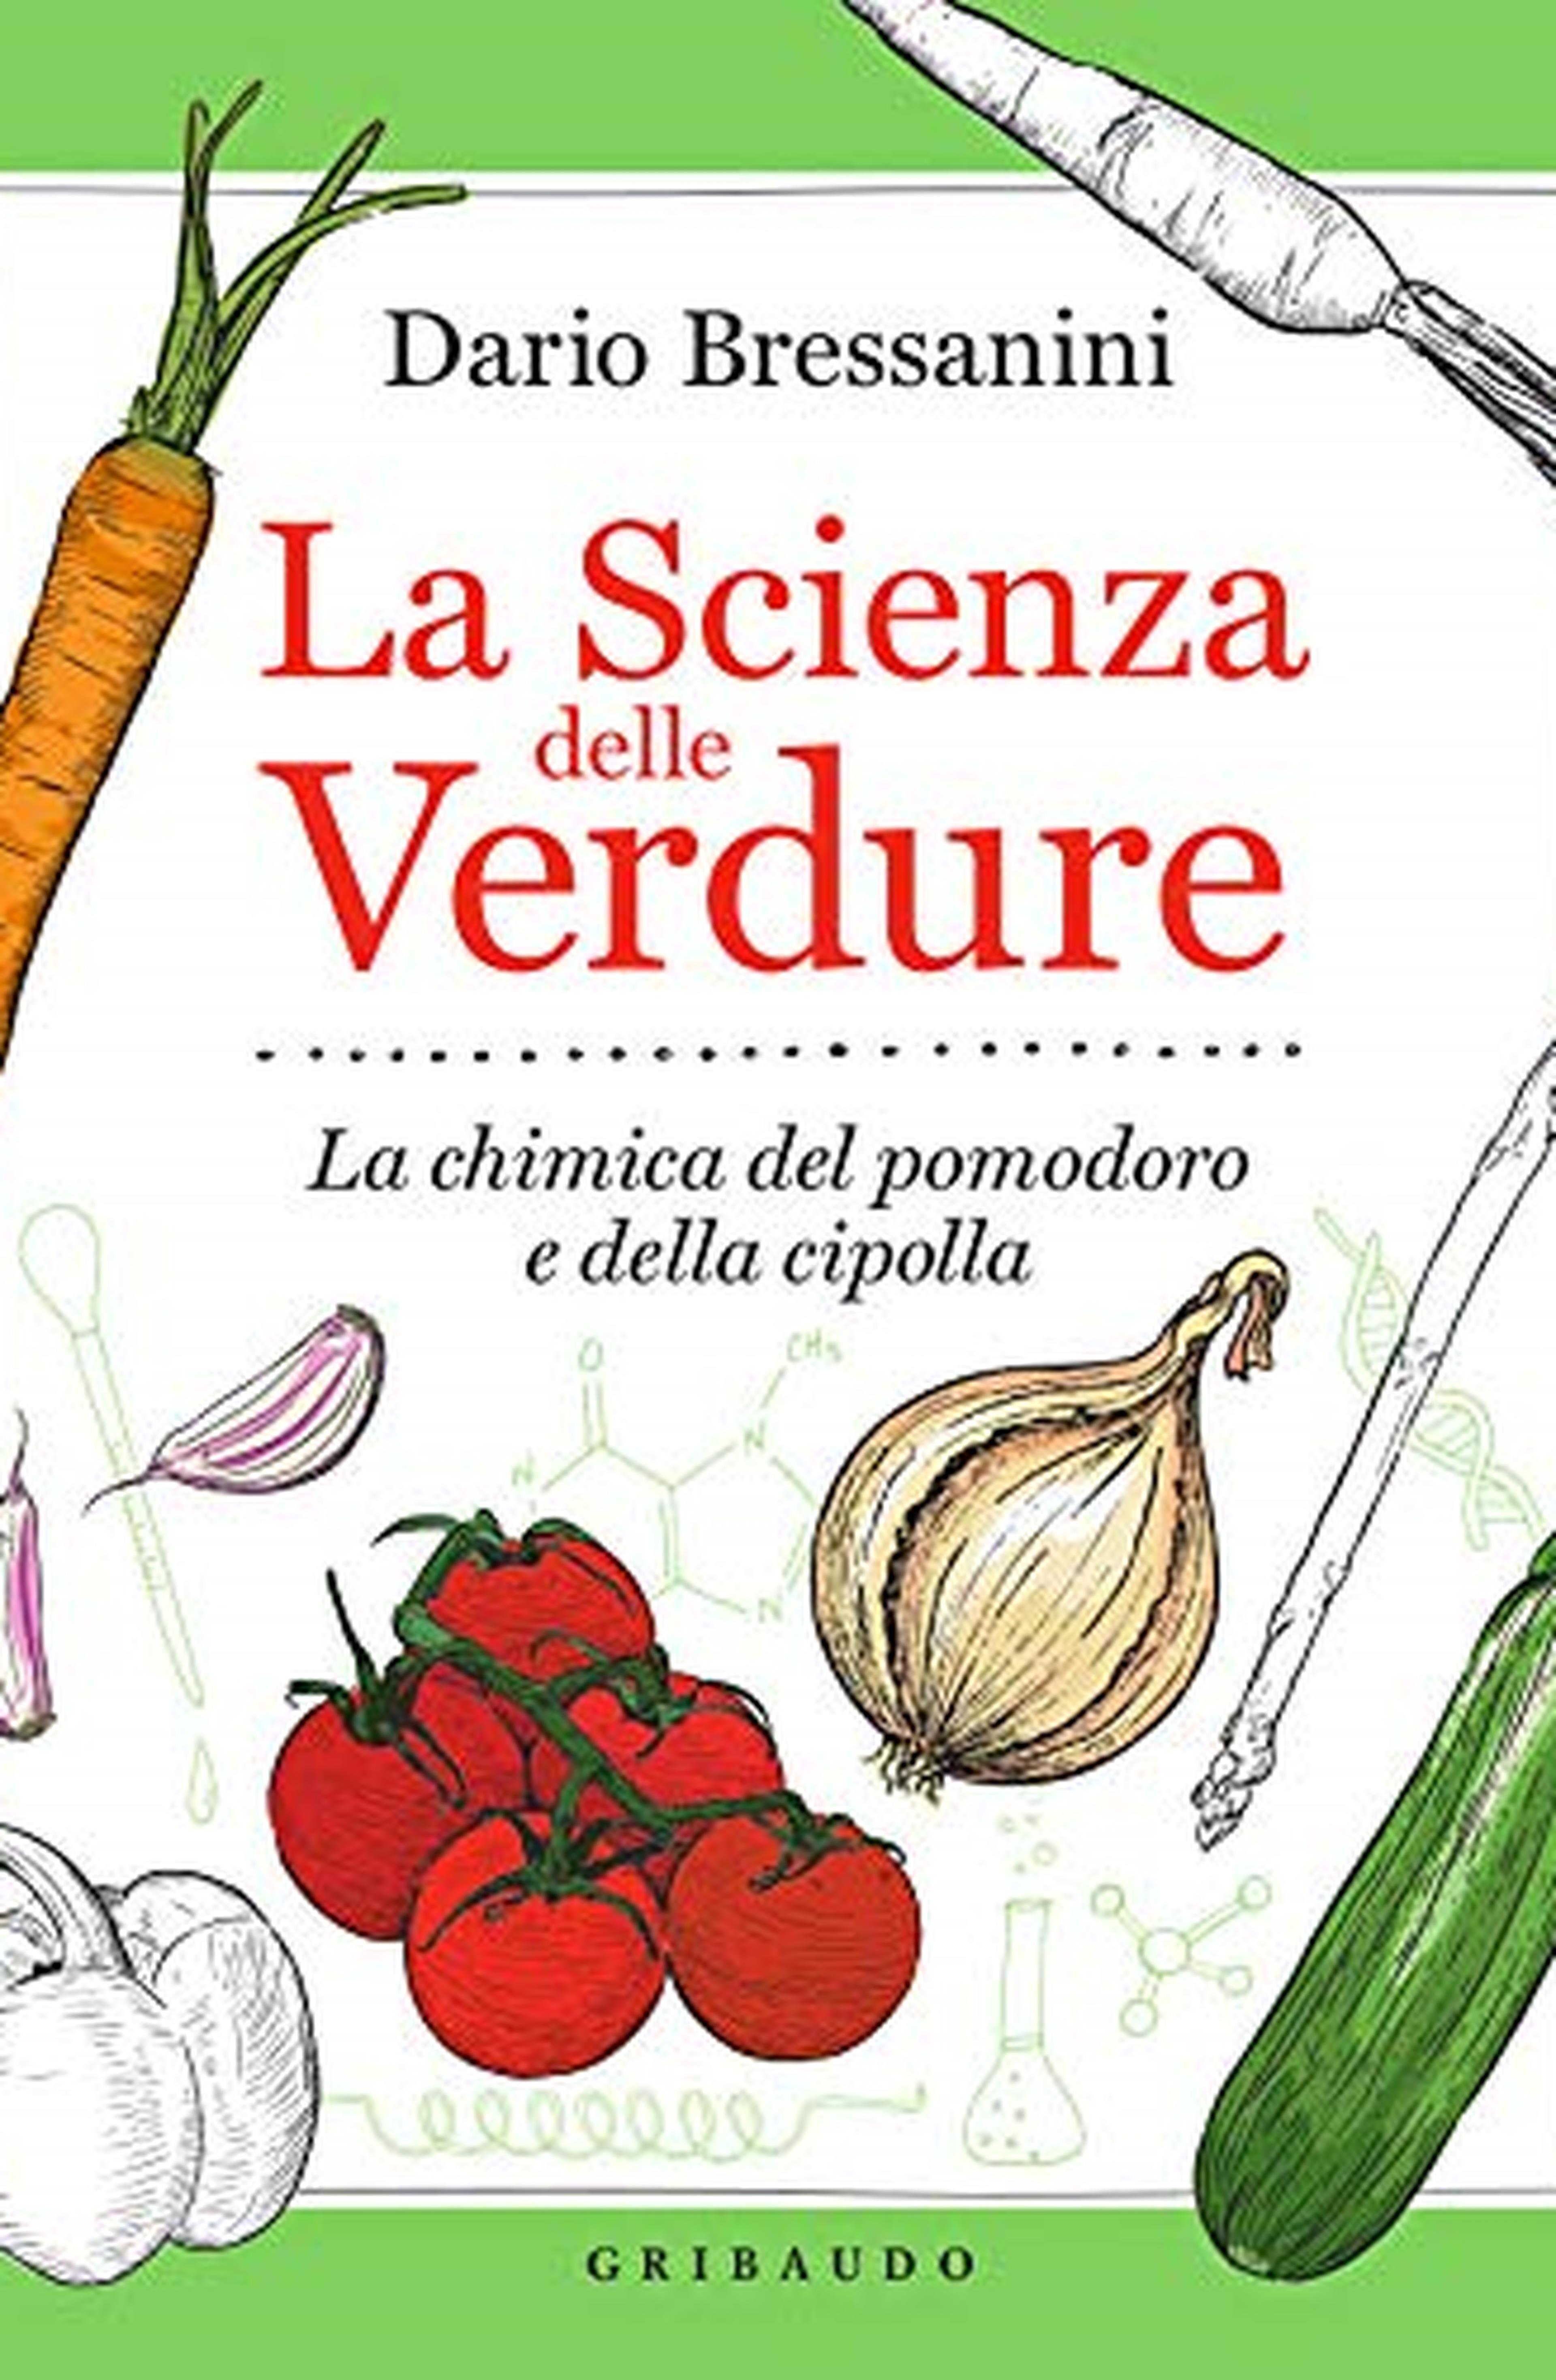 La scienza delle verdure